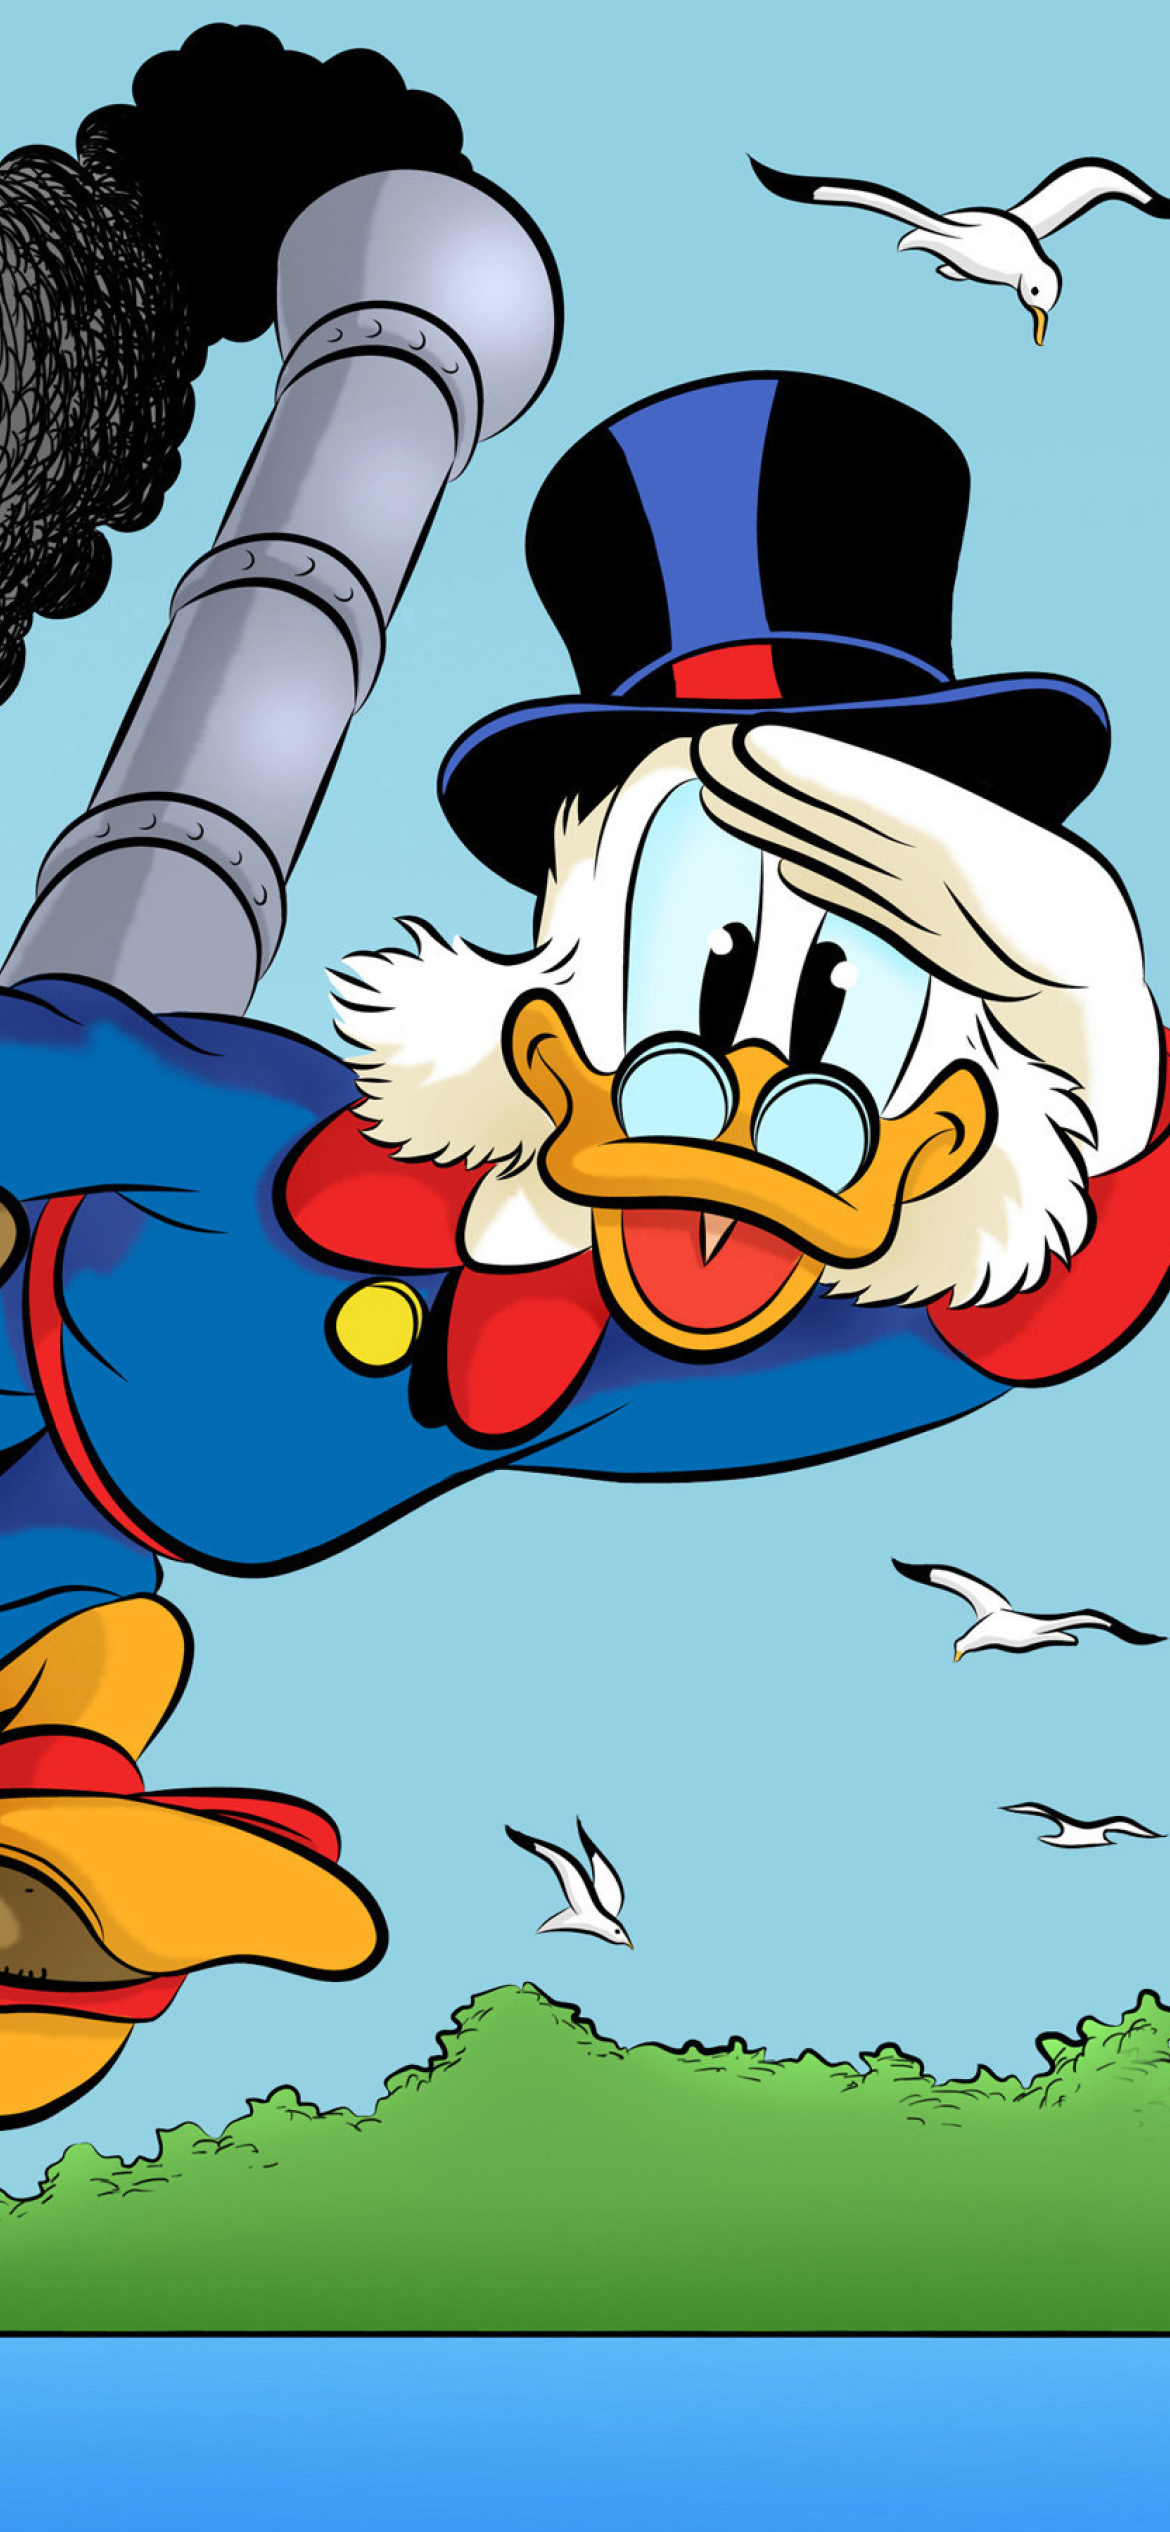 Scrooge McDuck from Ducktales wallpaper 1170x2532